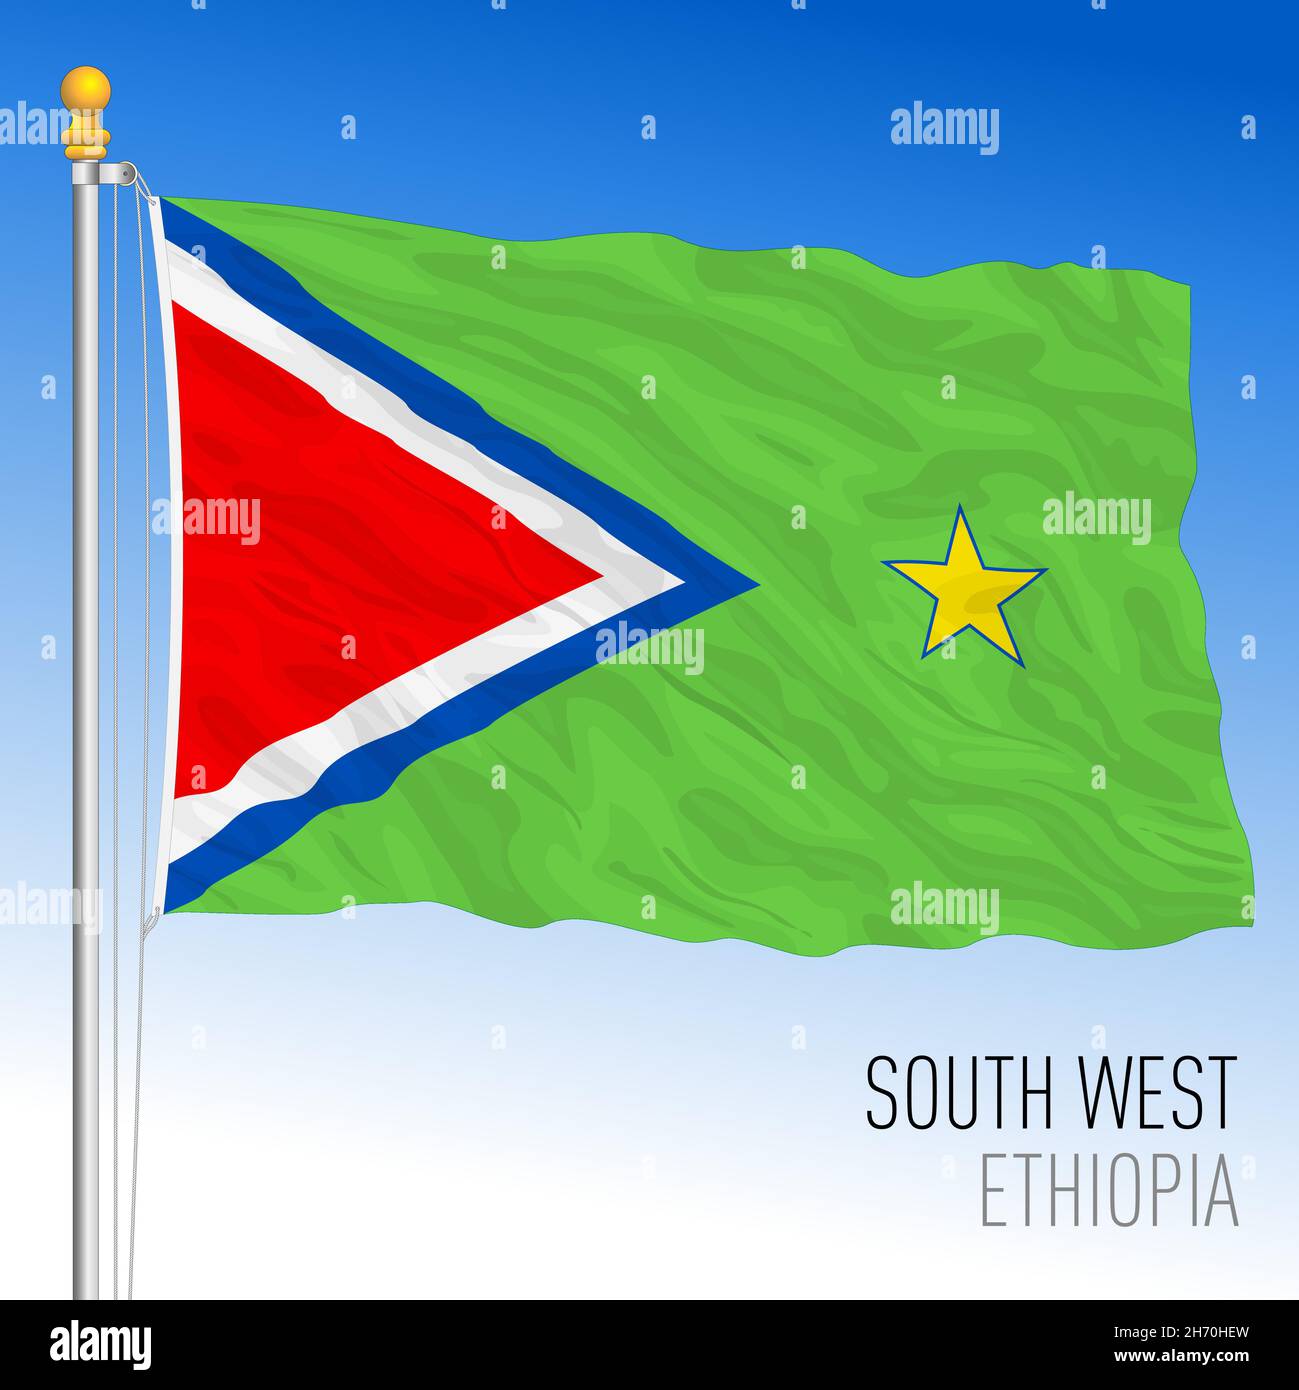 Bandiera regionale del Sud-Ovest, Repubblica di Etiopia, illustrazione vettoriale su sfondo blu cielo Illustrazione Vettoriale